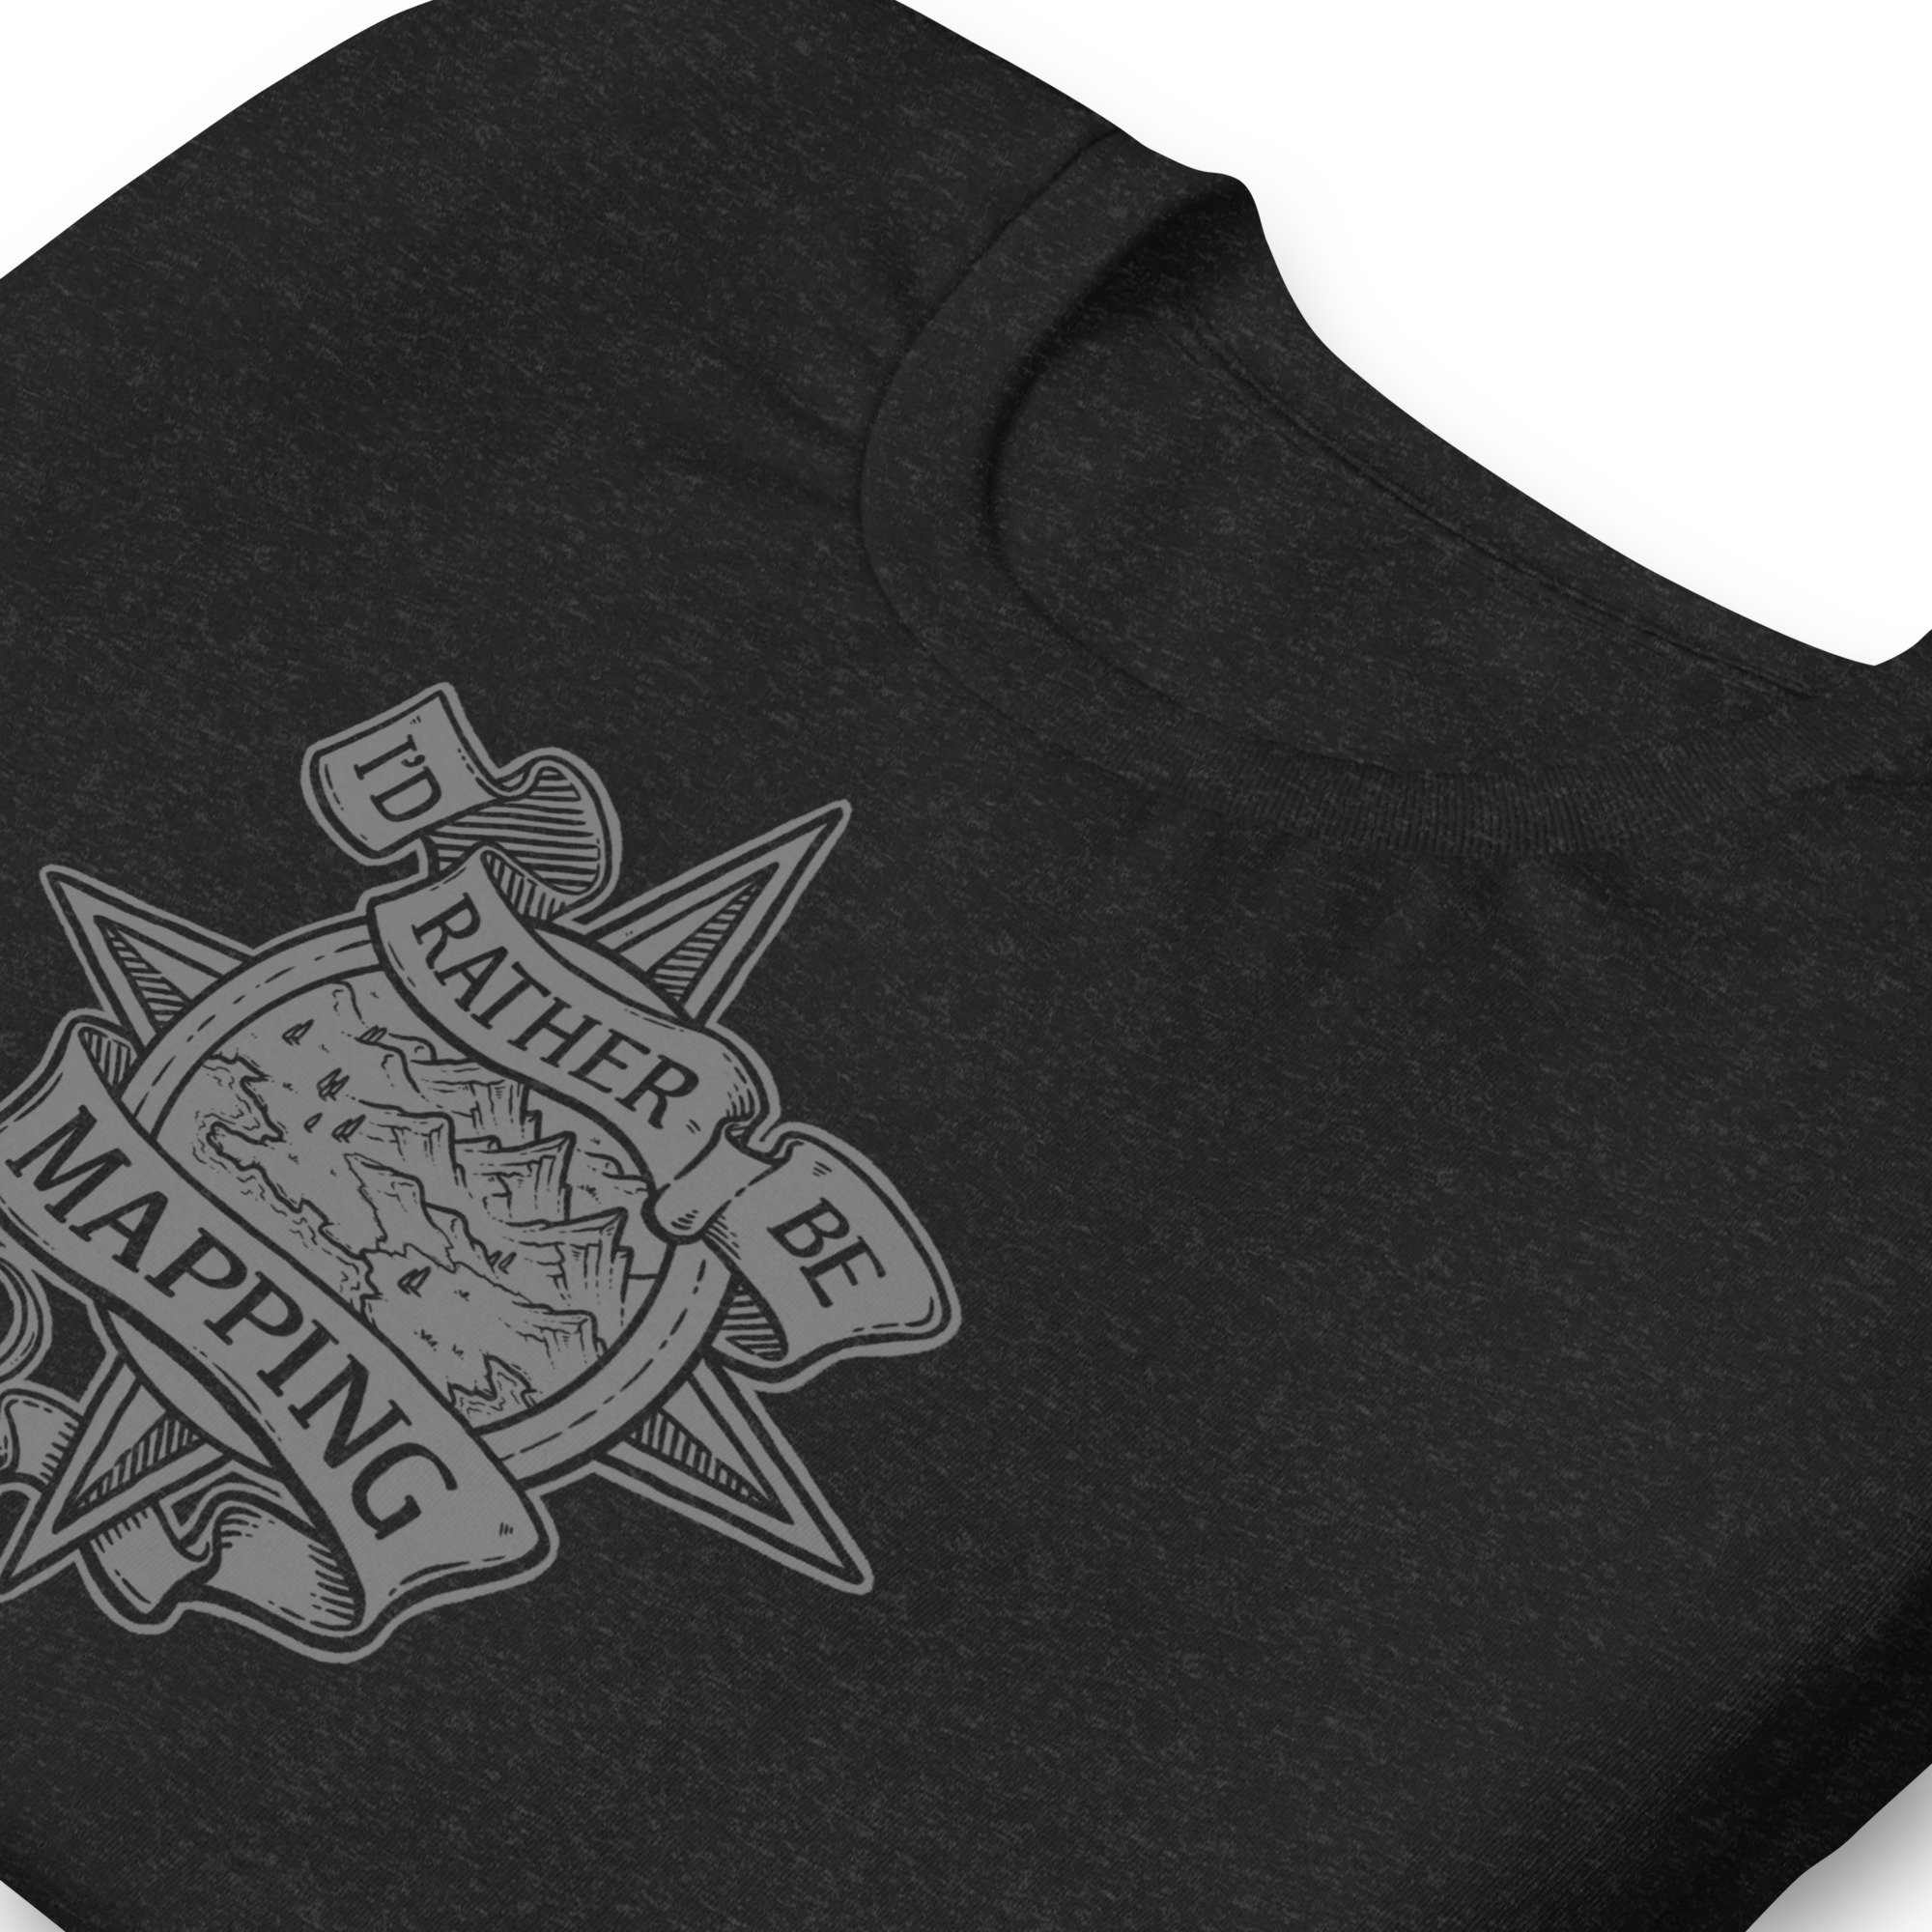 unisex-staple-t-shirt-black-heather-zoomed-in-641cf4d6012b0.jpg